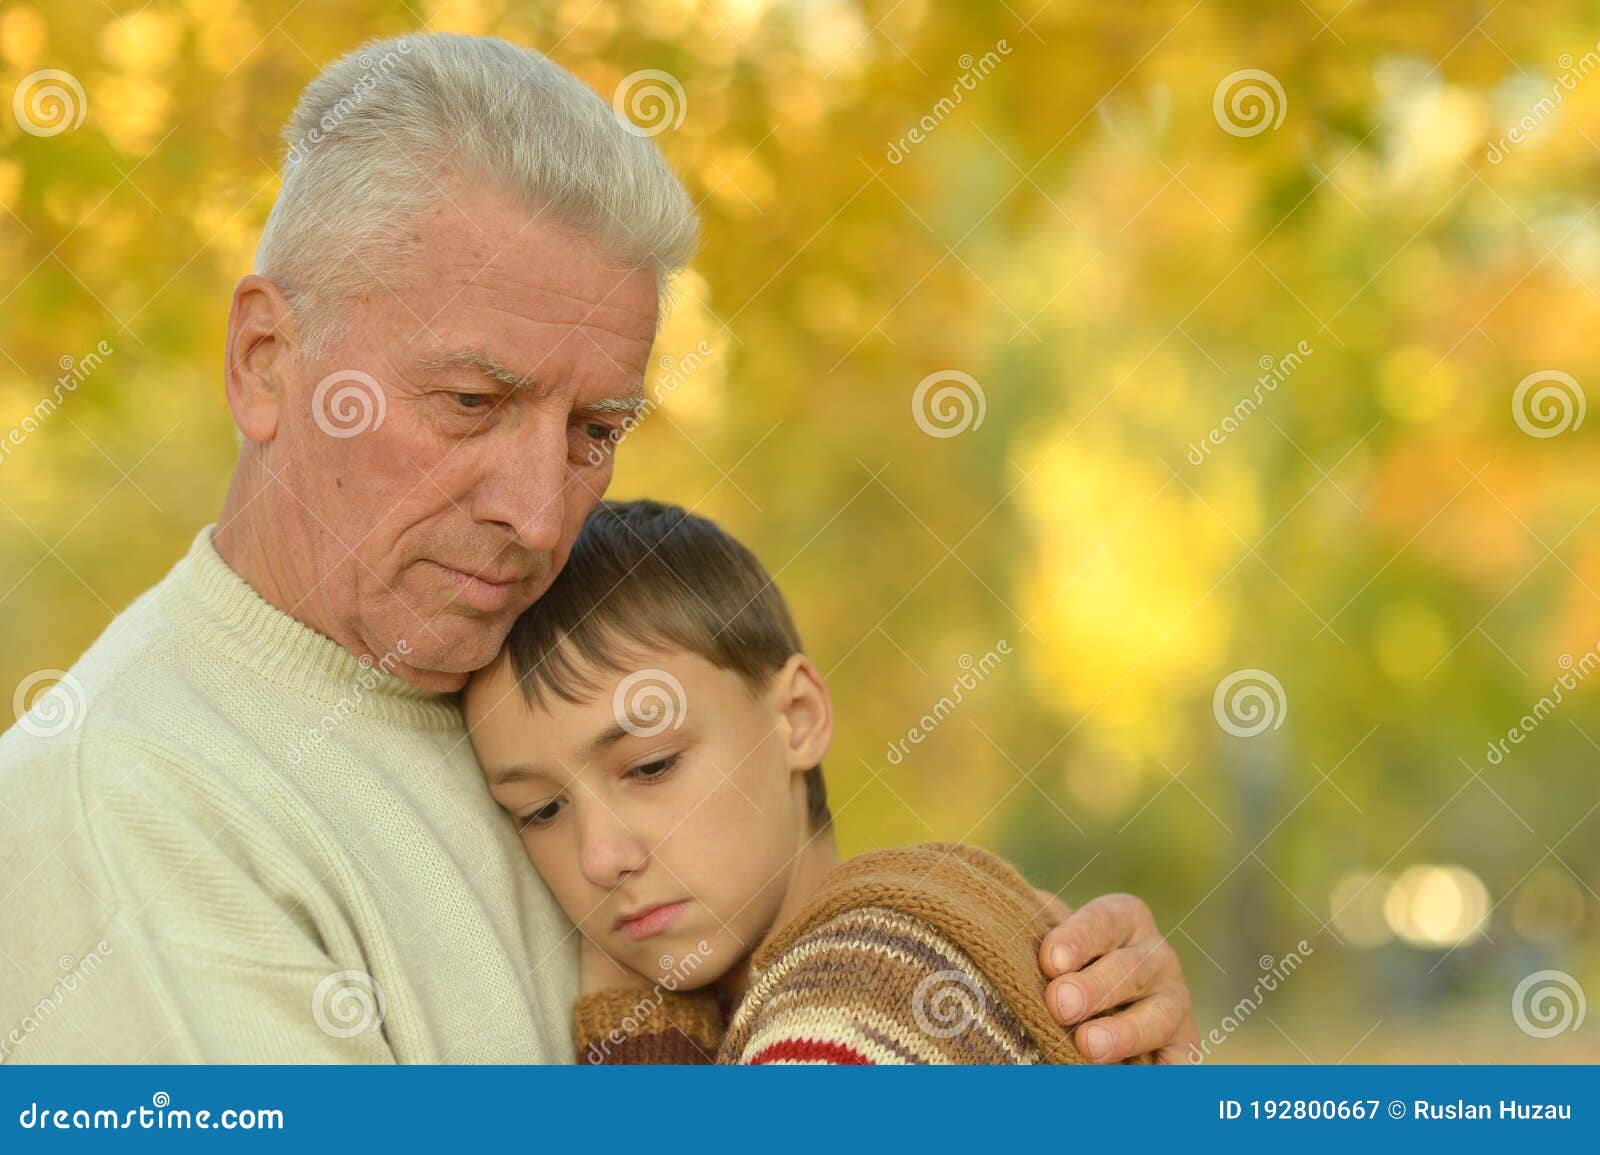 Дед обнимать. Внук в объятиях дедушки. Дед обнимает внука. Дедушка и внук обнимаются. Внук обнимает Деда.